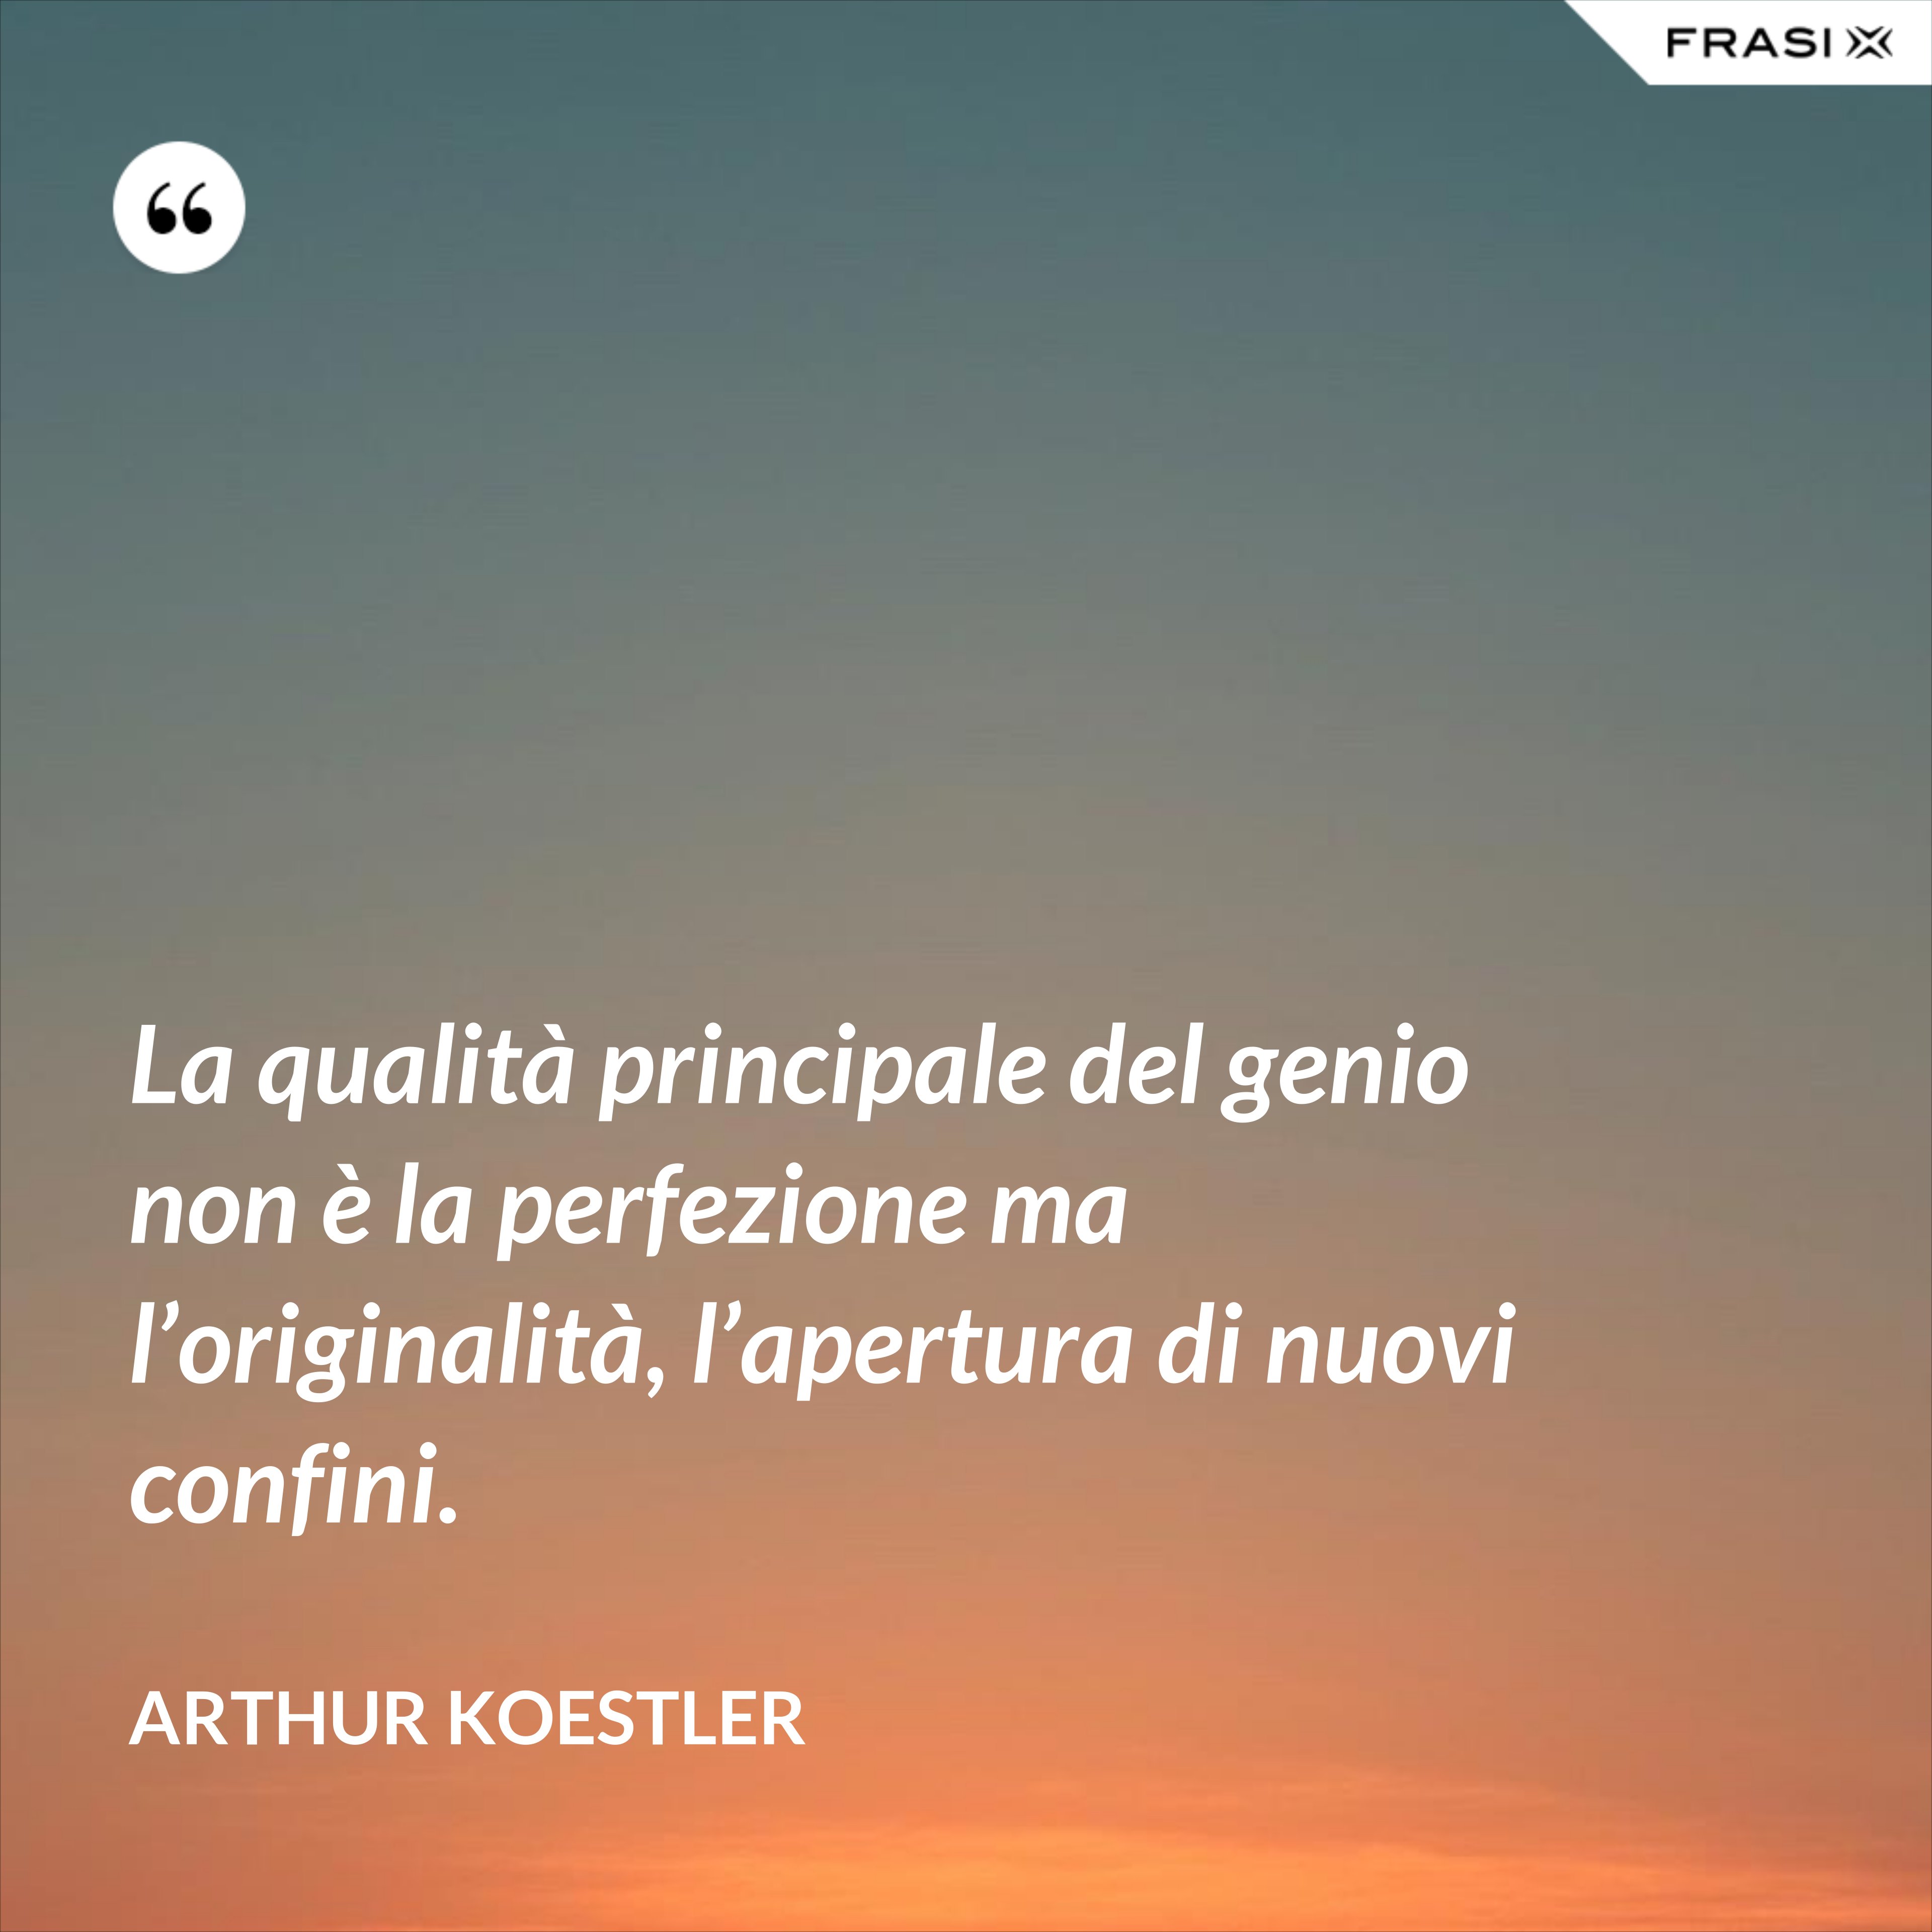 La qualità principale del genio non è la perfezione ma l’originalità, l’apertura di nuovi confini. - Arthur Koestler